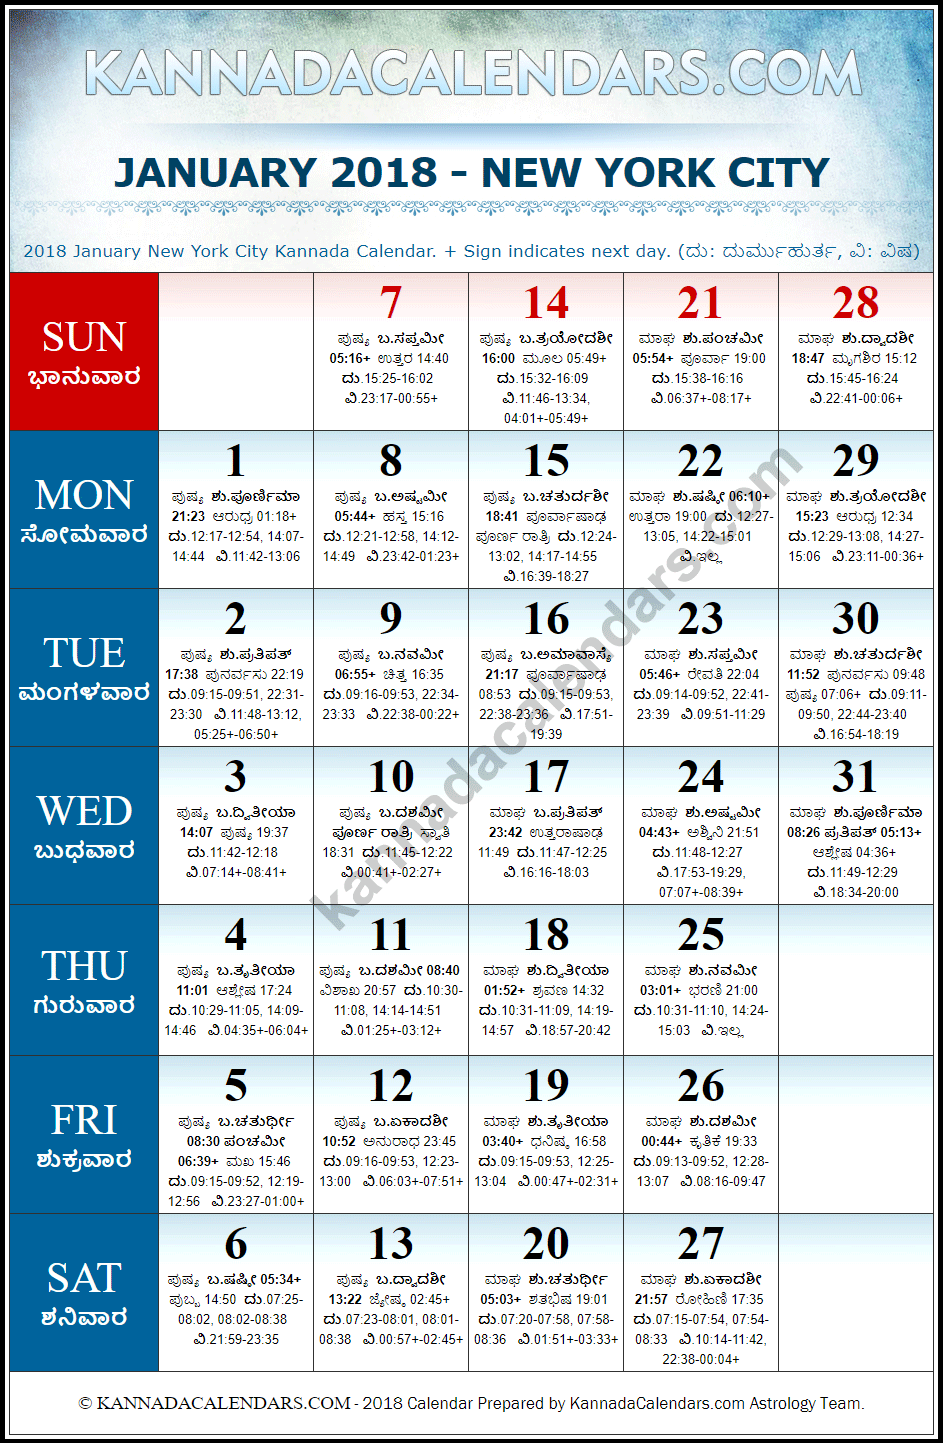 January 2018 Kannada Calendar for New York, USA